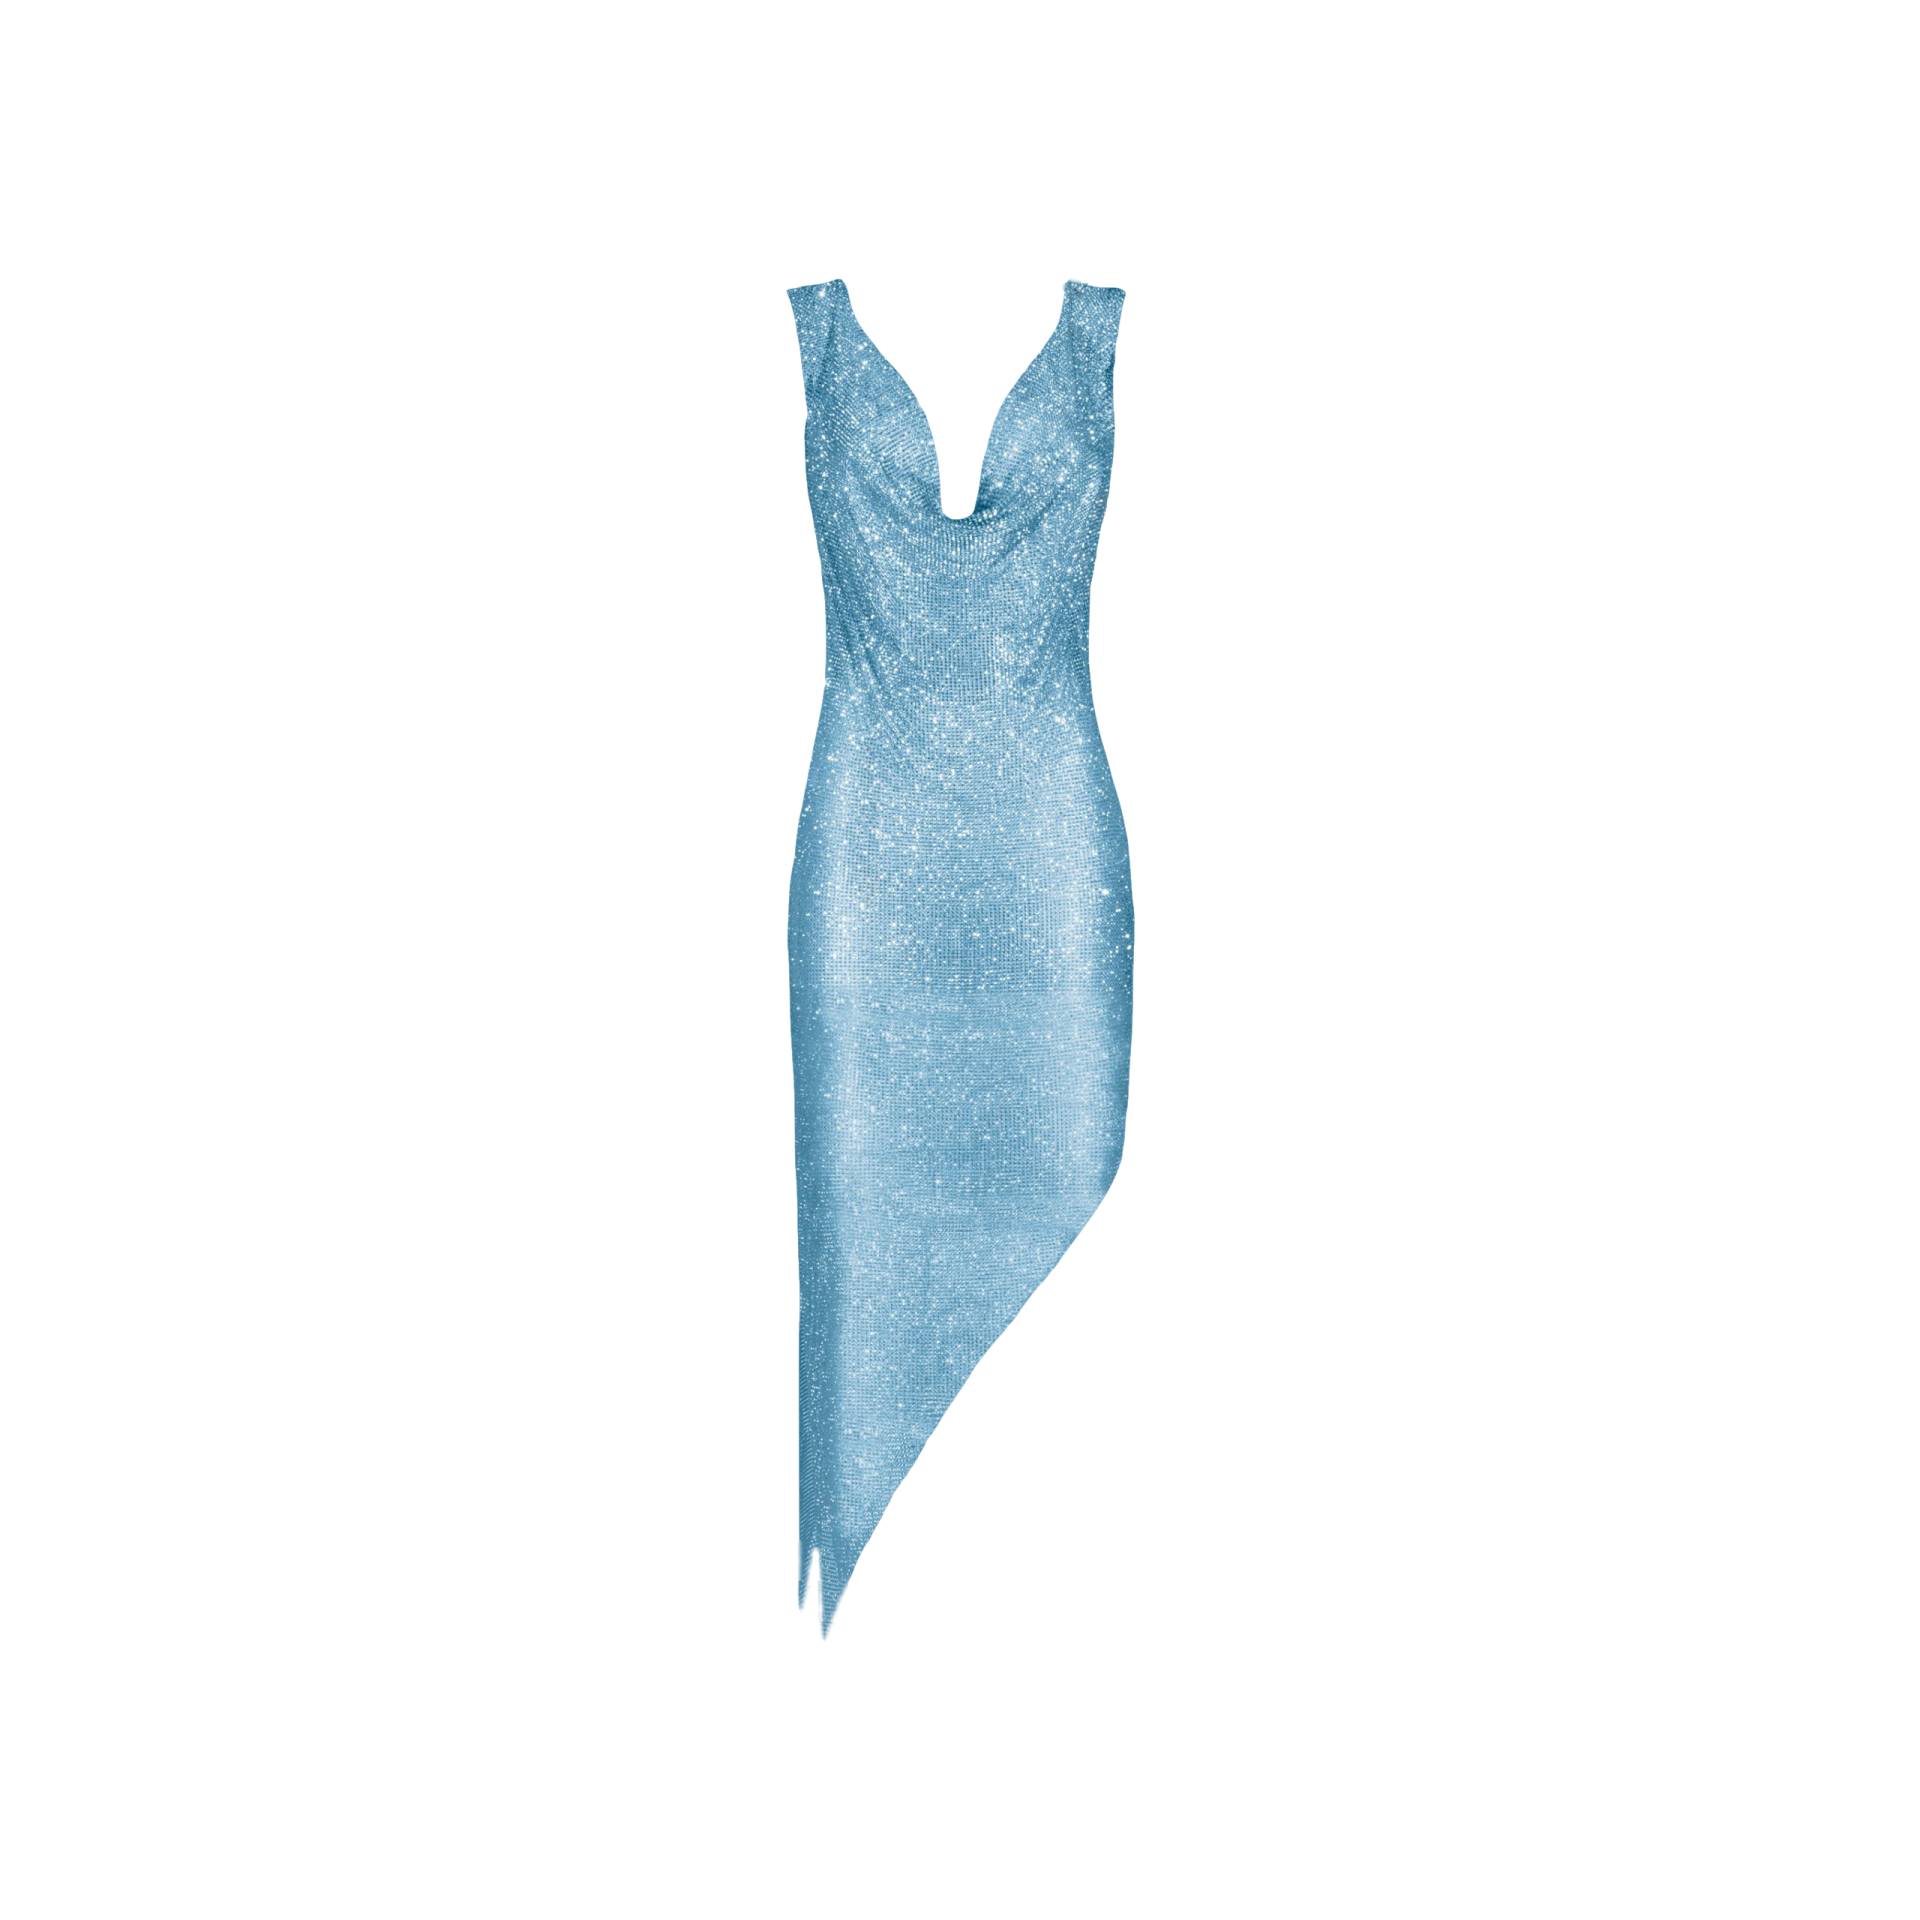 Aqua crystals draped dress von Daniele Morena